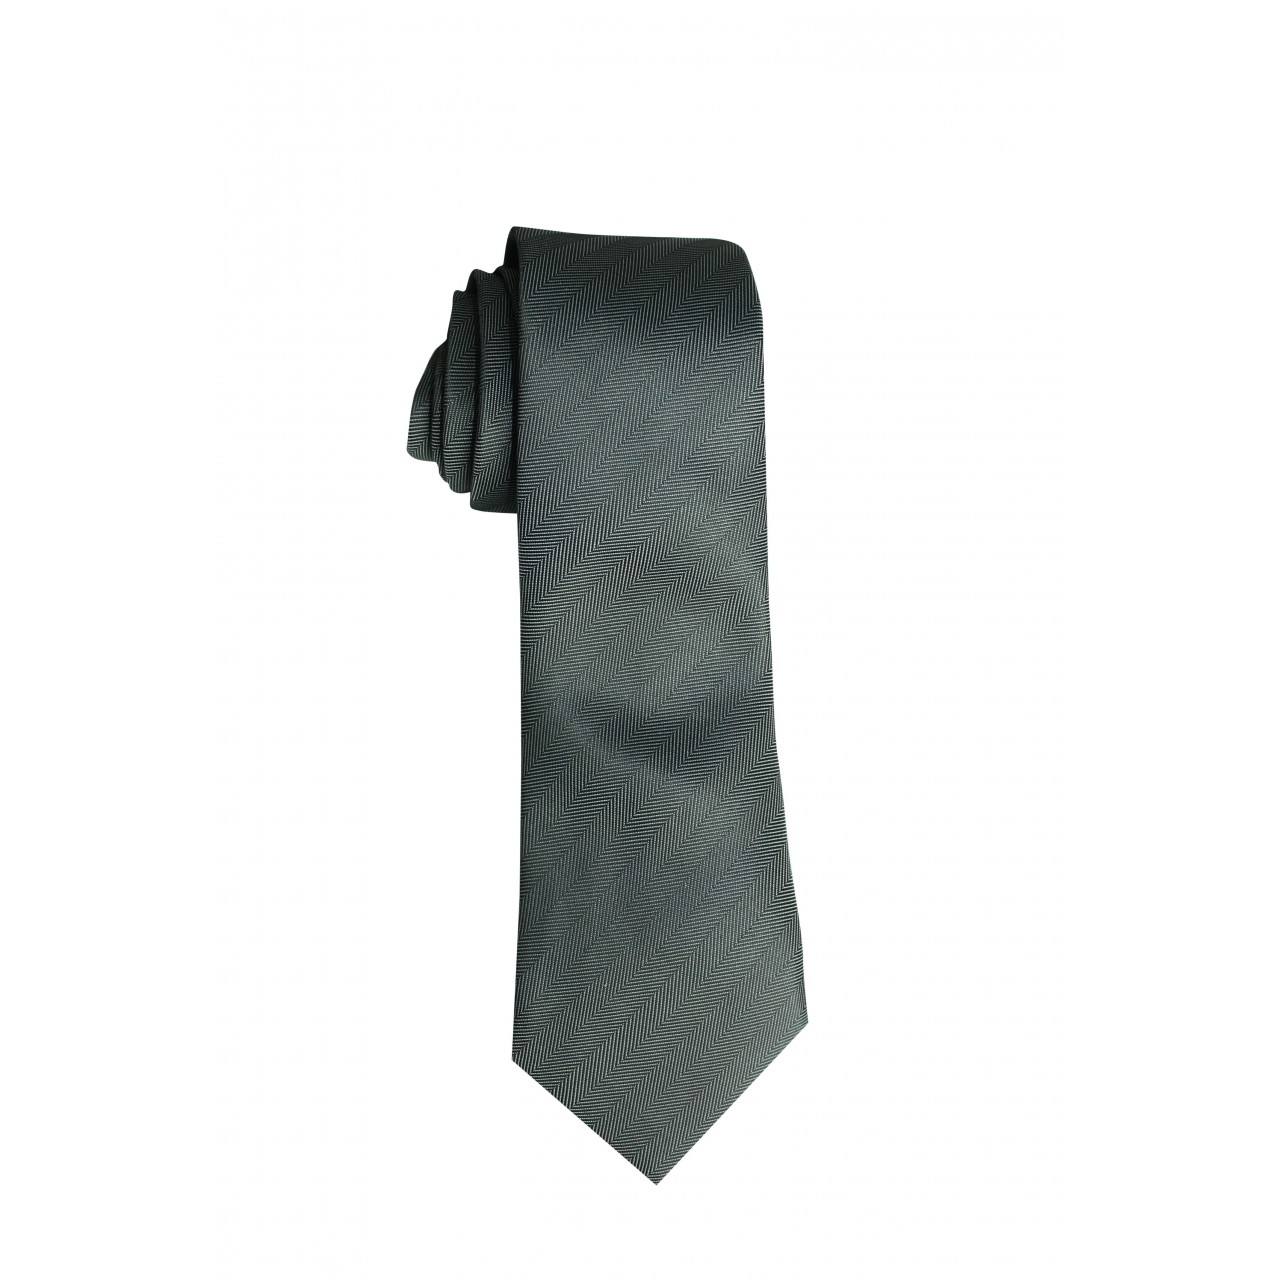 Men's Formal Basic VOGUE LIFE Ash Color Striped Shirt With Tie Black Set